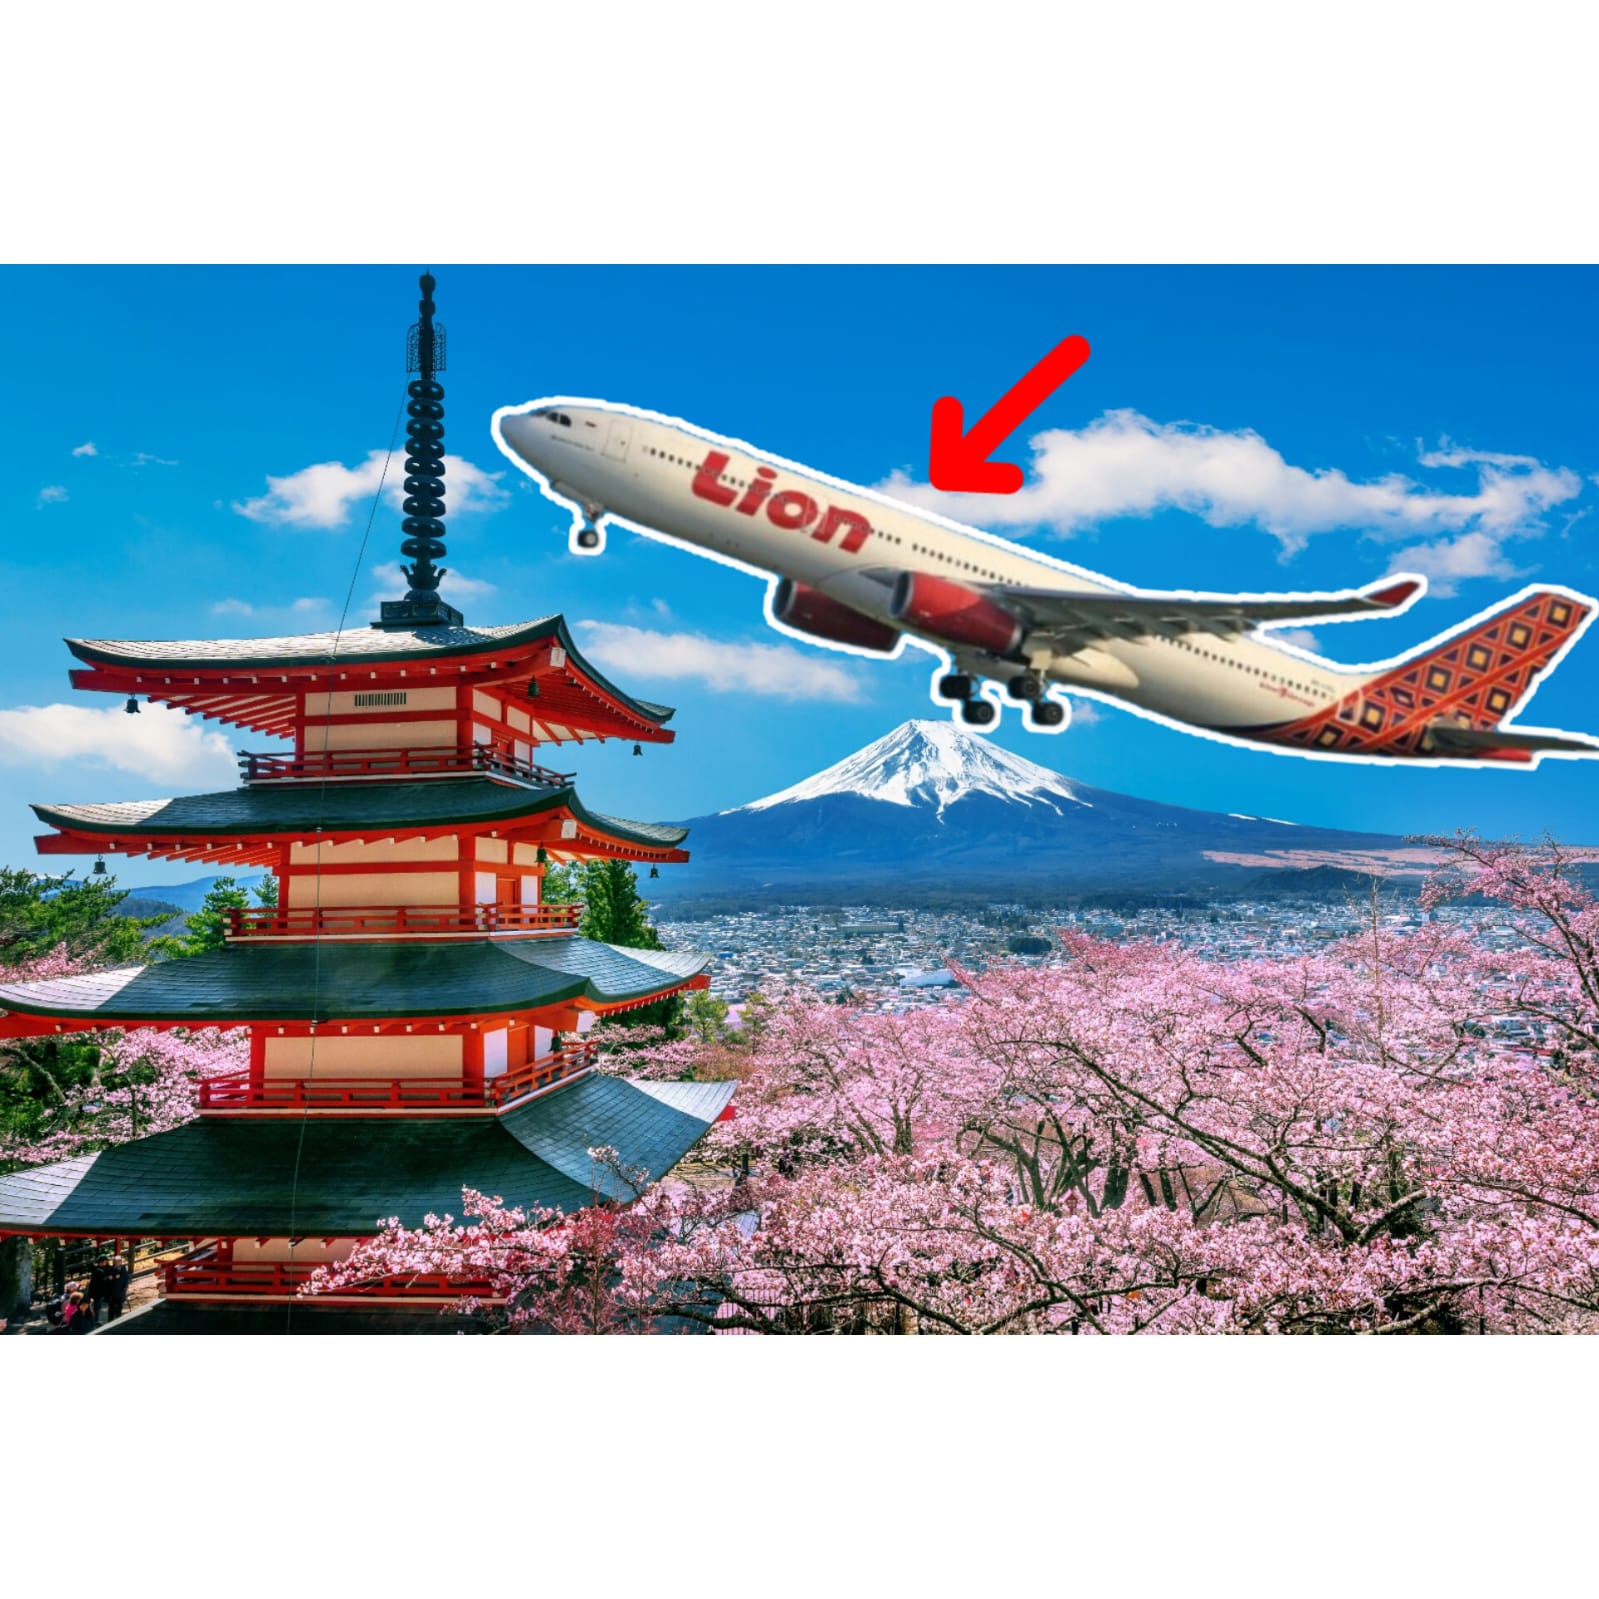 Lion Air Tawarkan Tiket Murah ke Tokyo PP Mulai dari Rp 4,9 Juta Saja, Yuk Explore Perjalanan Impianmu